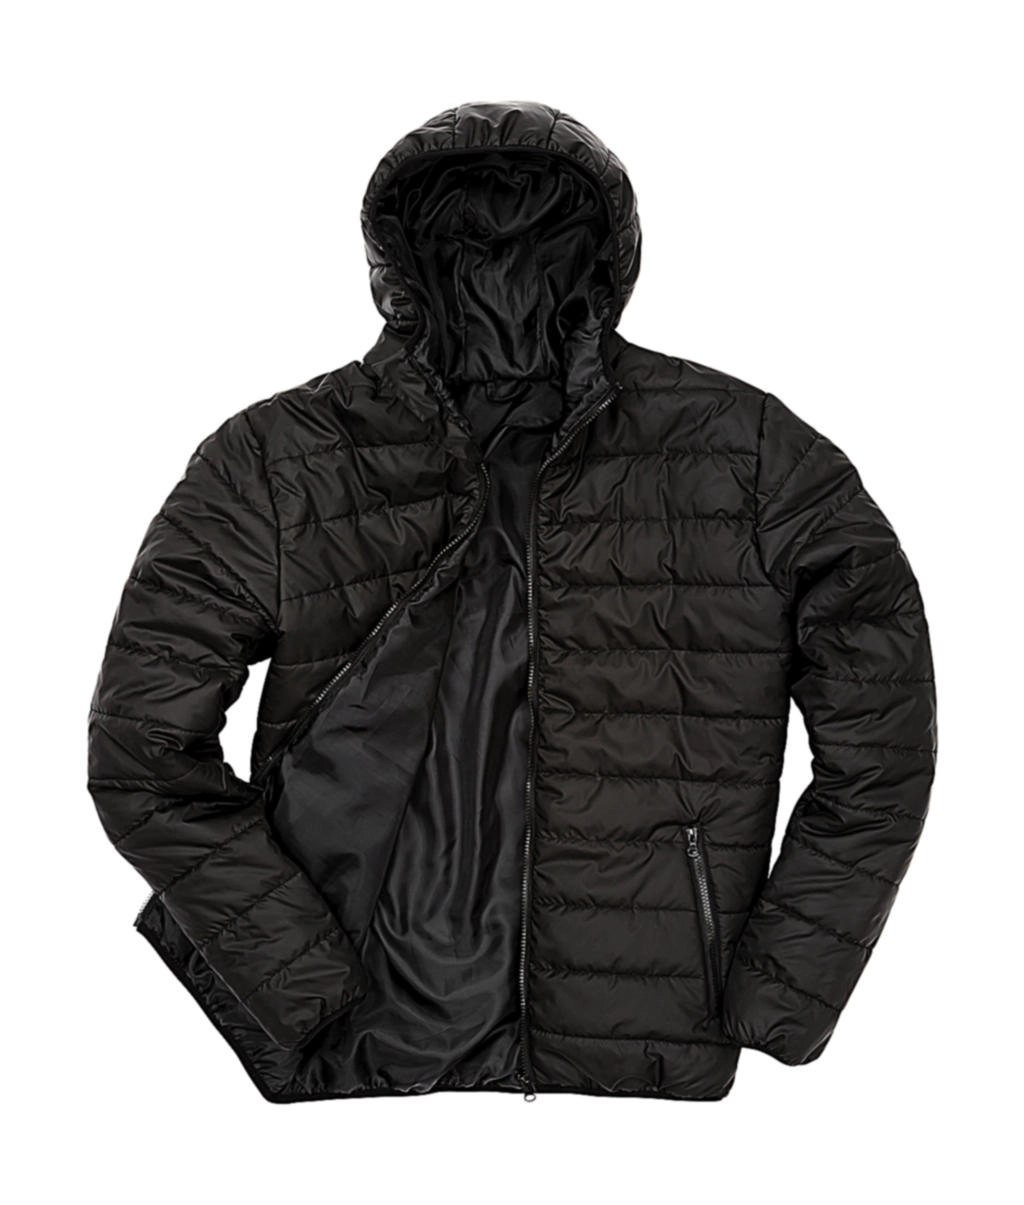 Soft Padded Jacket zum Besticken und Bedrucken in der Farbe Black mit Ihren Logo, Schriftzug oder Motiv.